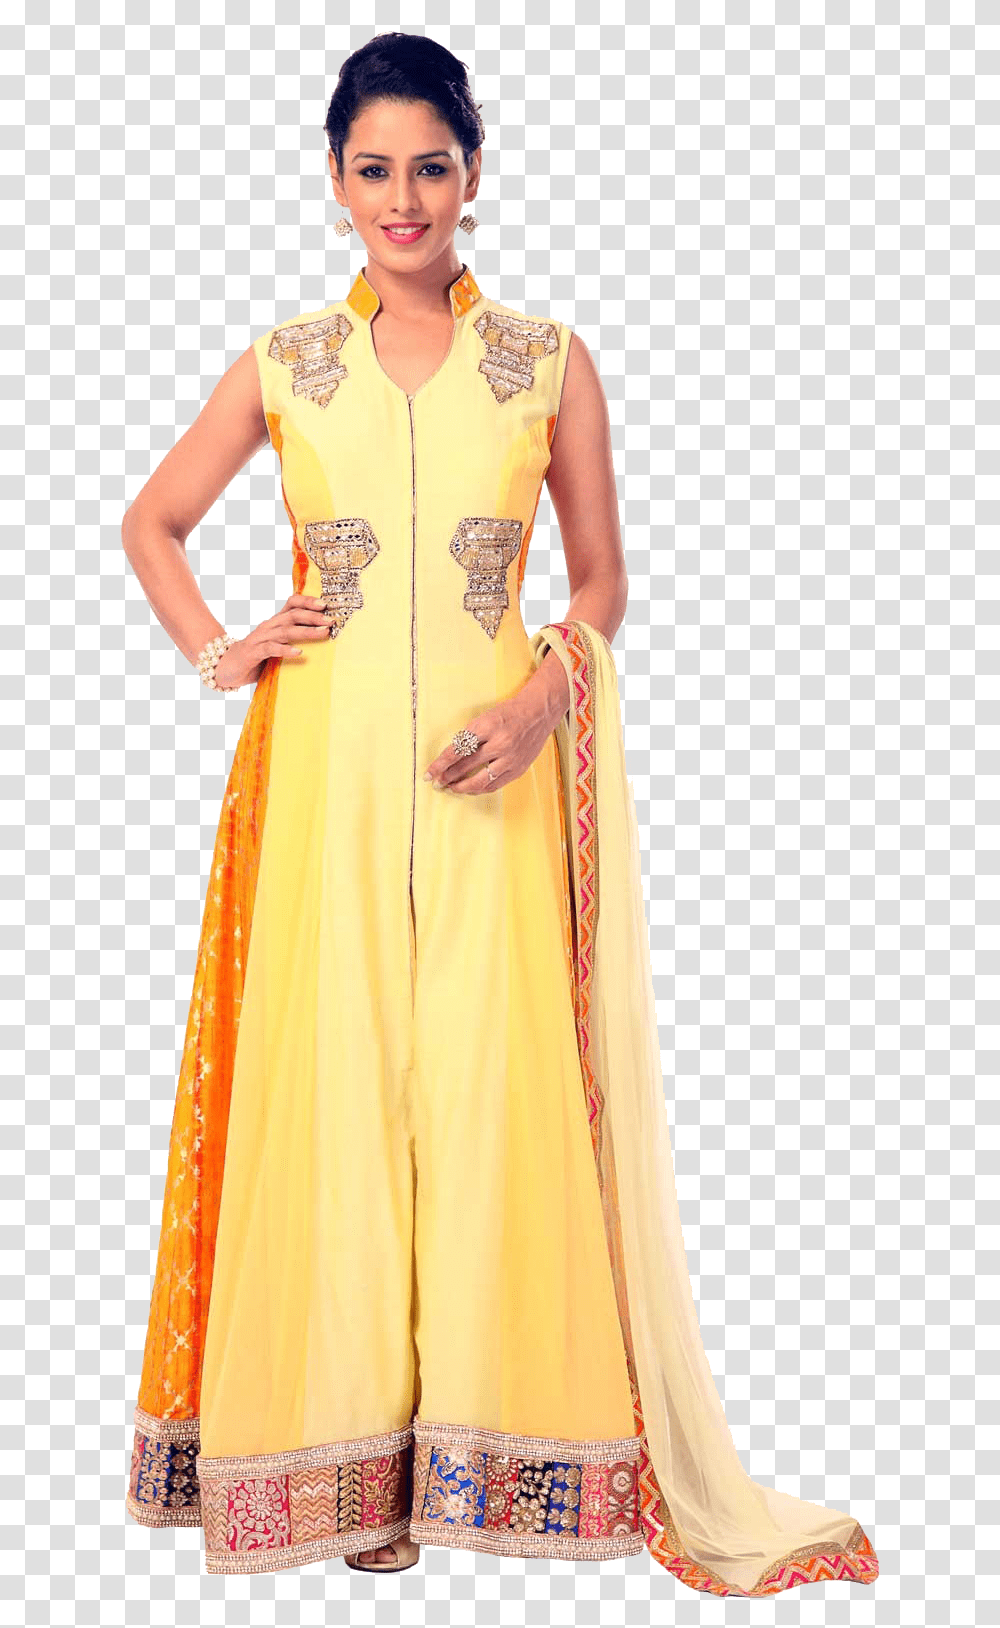 Chanderi Anarkali Suit Free Images Anarkali Suit, Apparel, Evening Dress, Robe Transparent Png